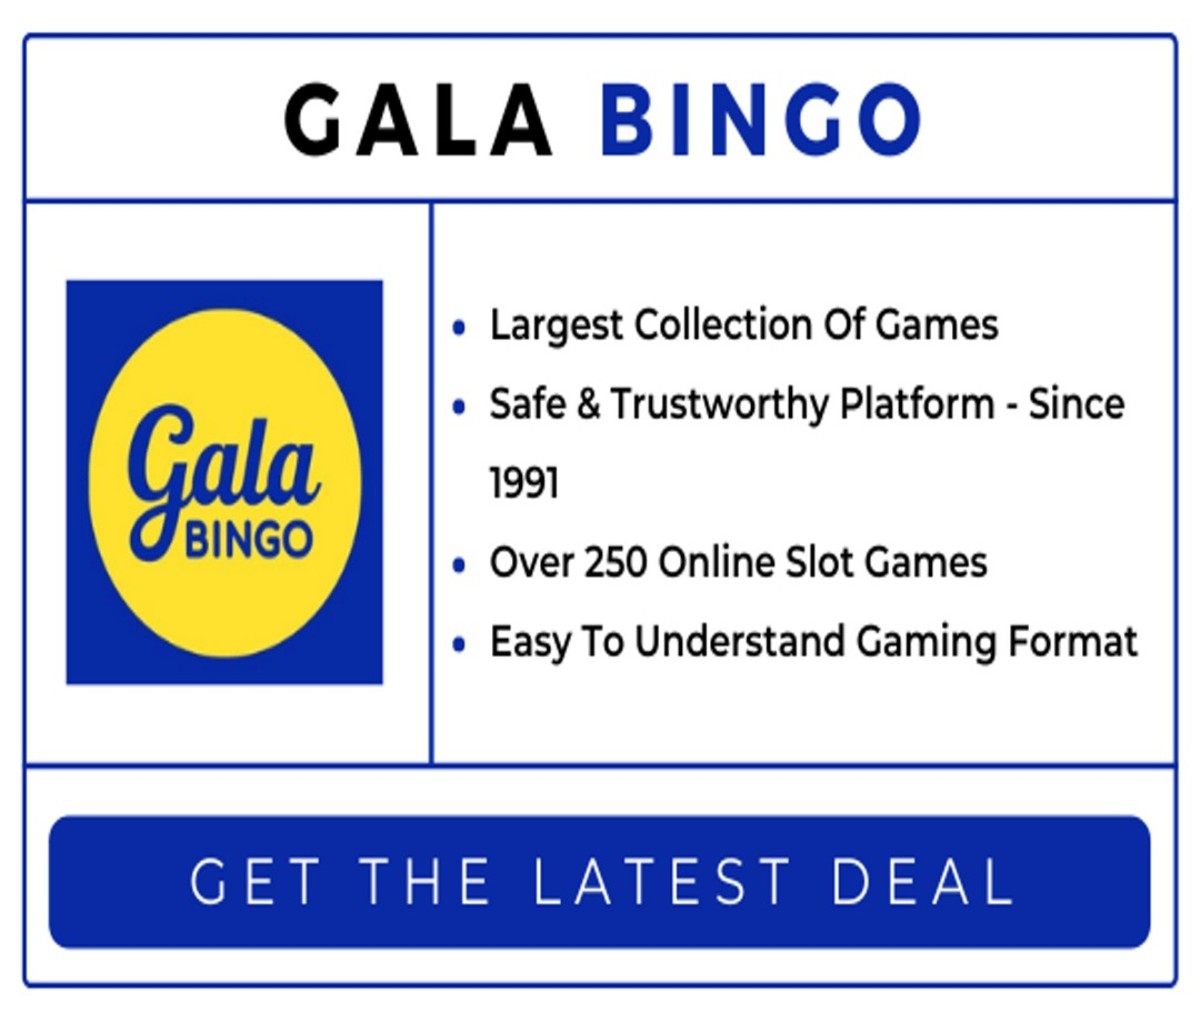 Gala Bingo - Top Website To Play Bingo Online For Beginners